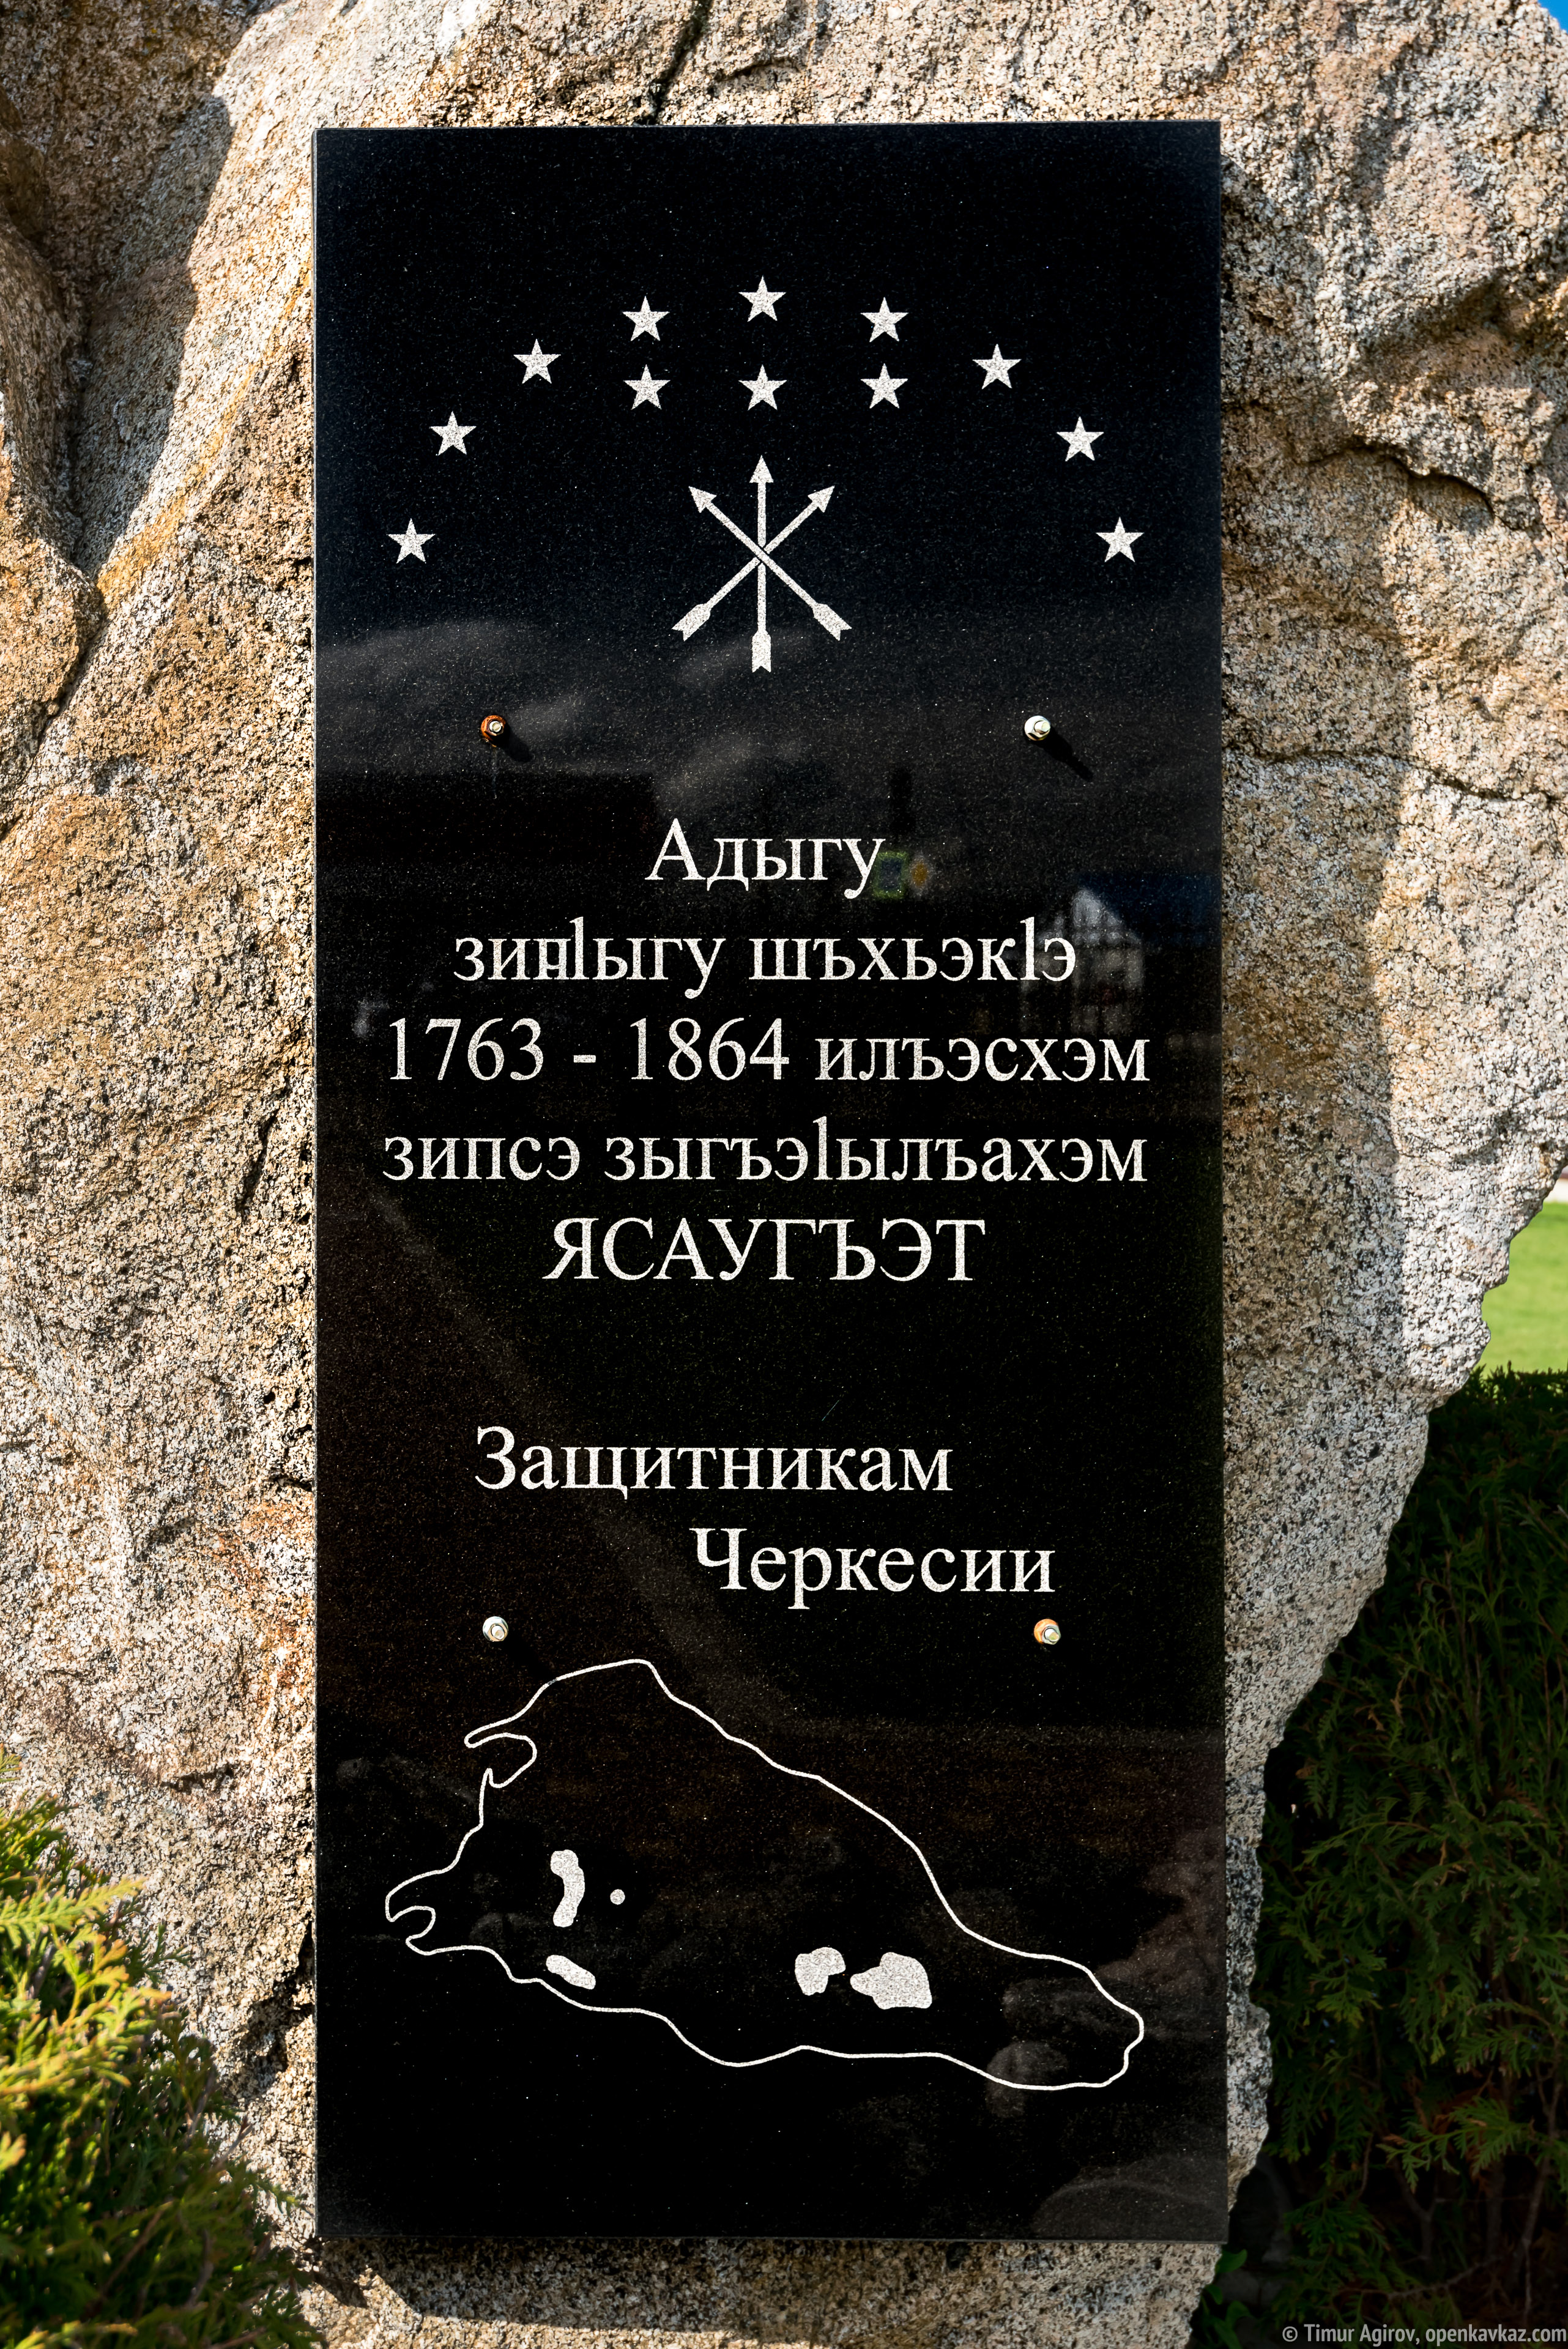 Мемориал "Защитникам Черкесии" в ауле Уляп, Адыгея, Ингушетия